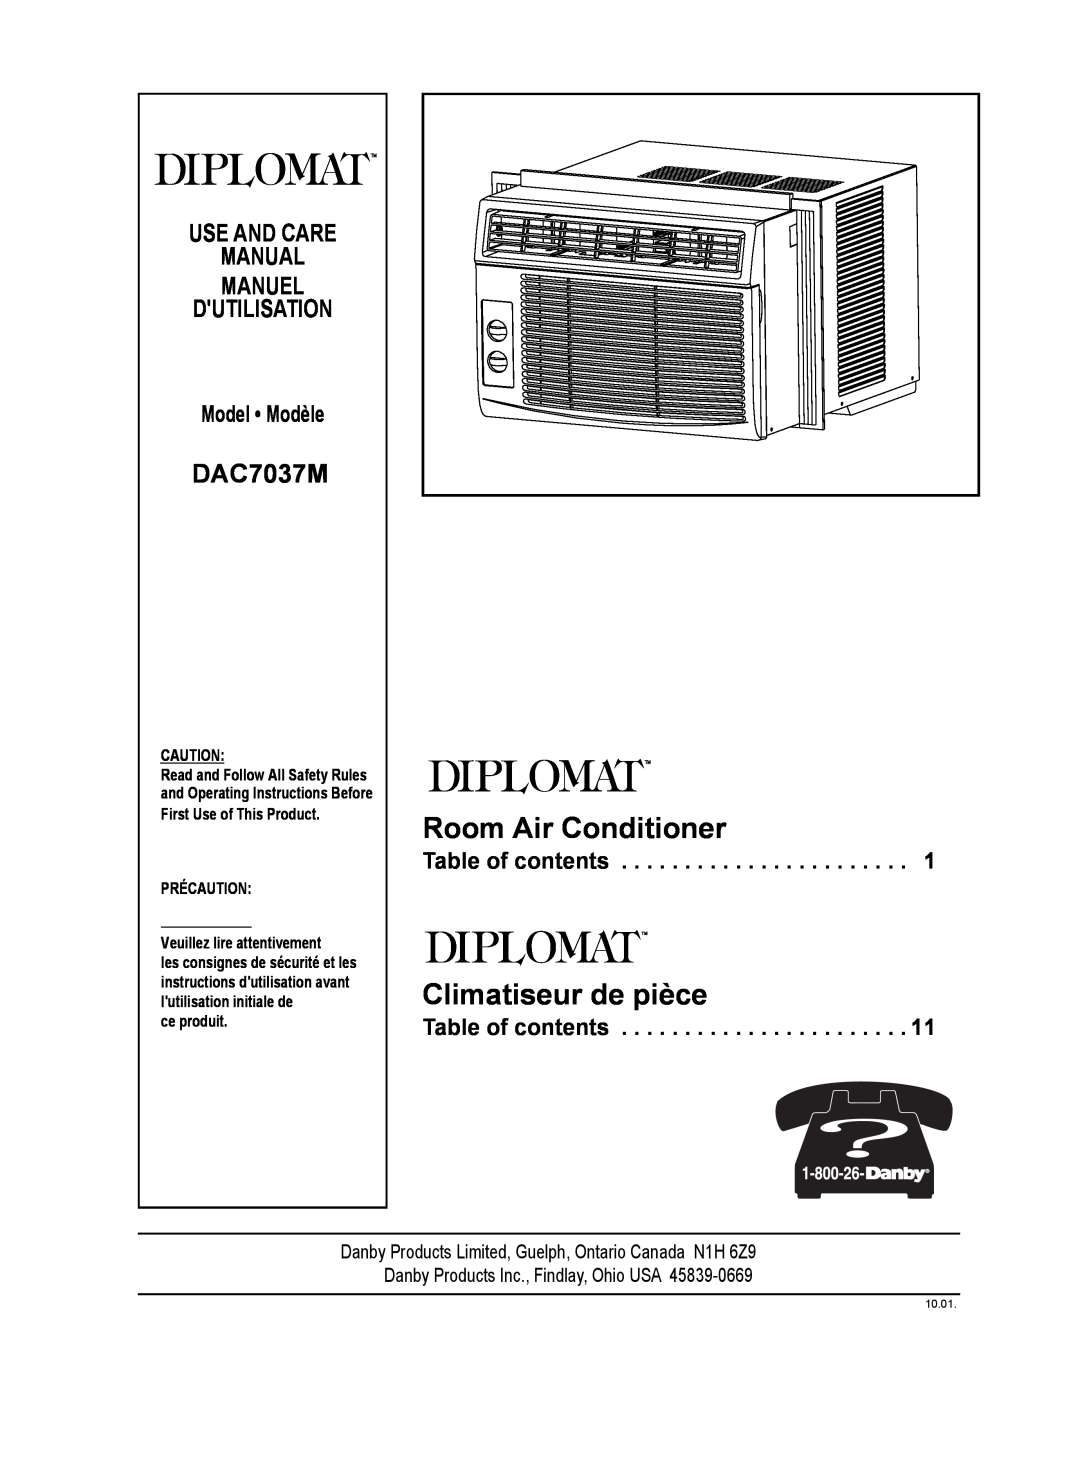 Danby DAC7037M manuel dutilisation Room Air Conditioner, Climatiseur de pièce, Use And Care Manual Manuel Dutilisation 